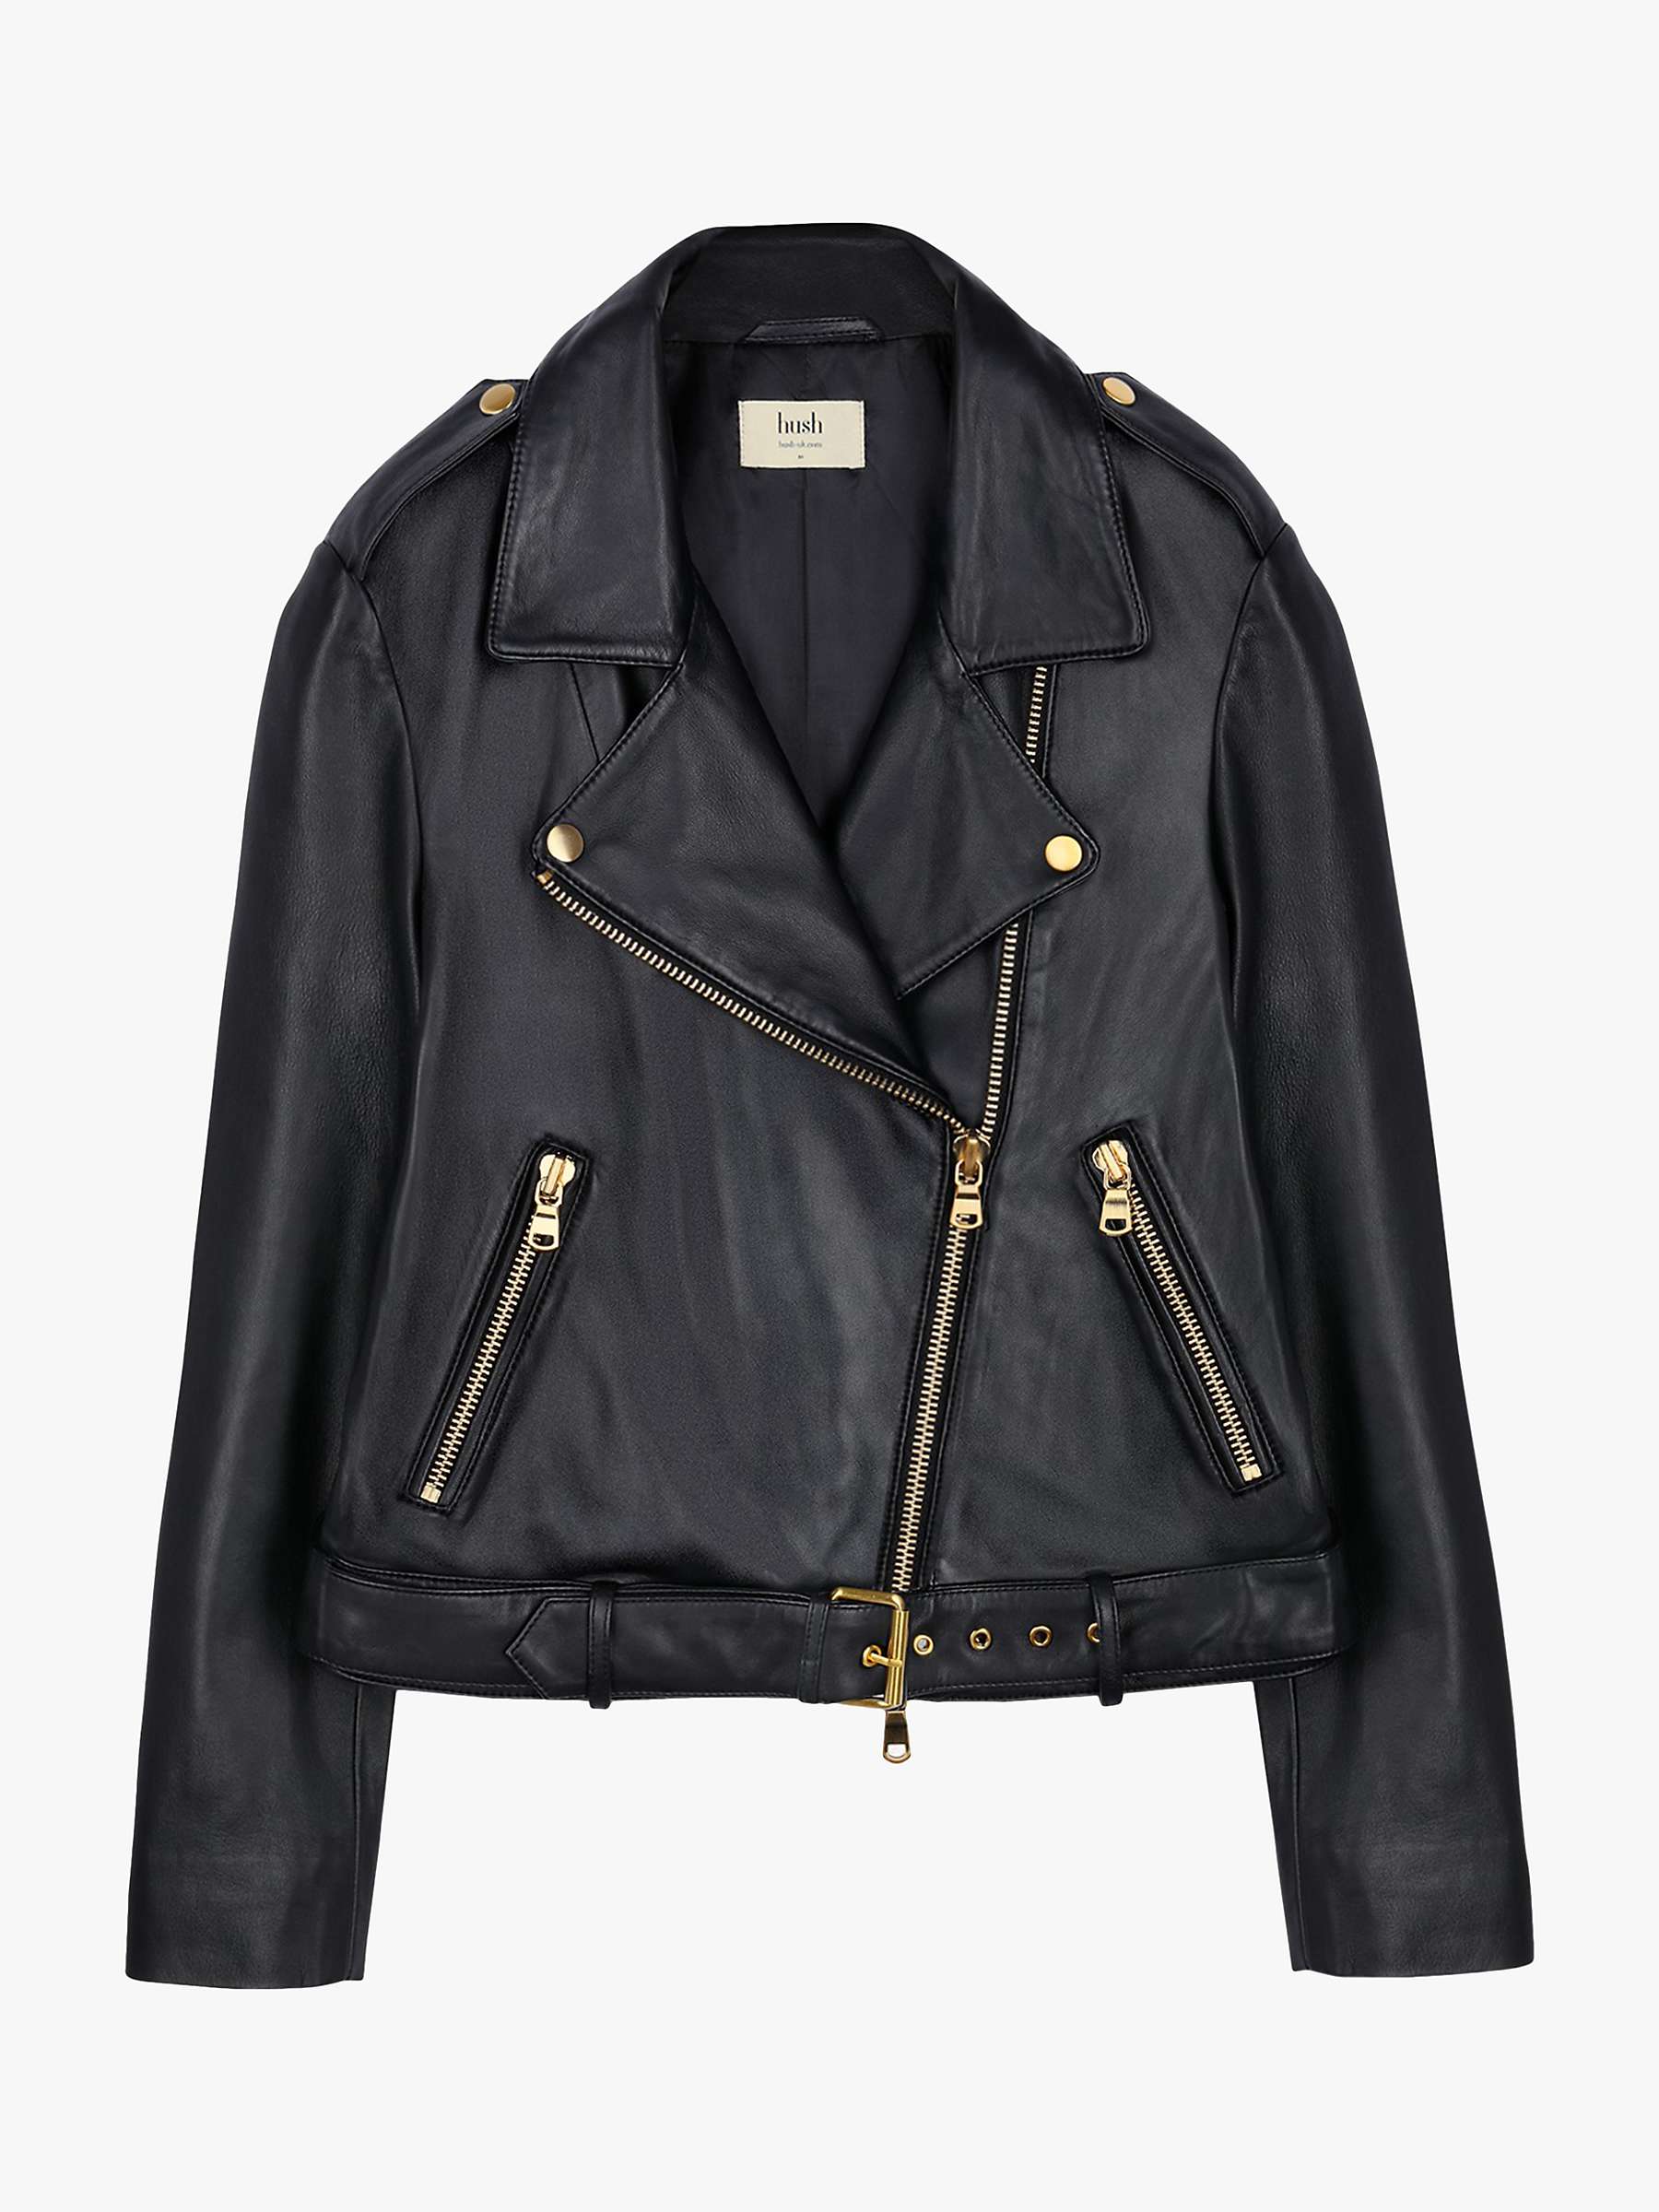 Buy hush Opal Leather Jacket, Black/Gold Online at johnlewis.com